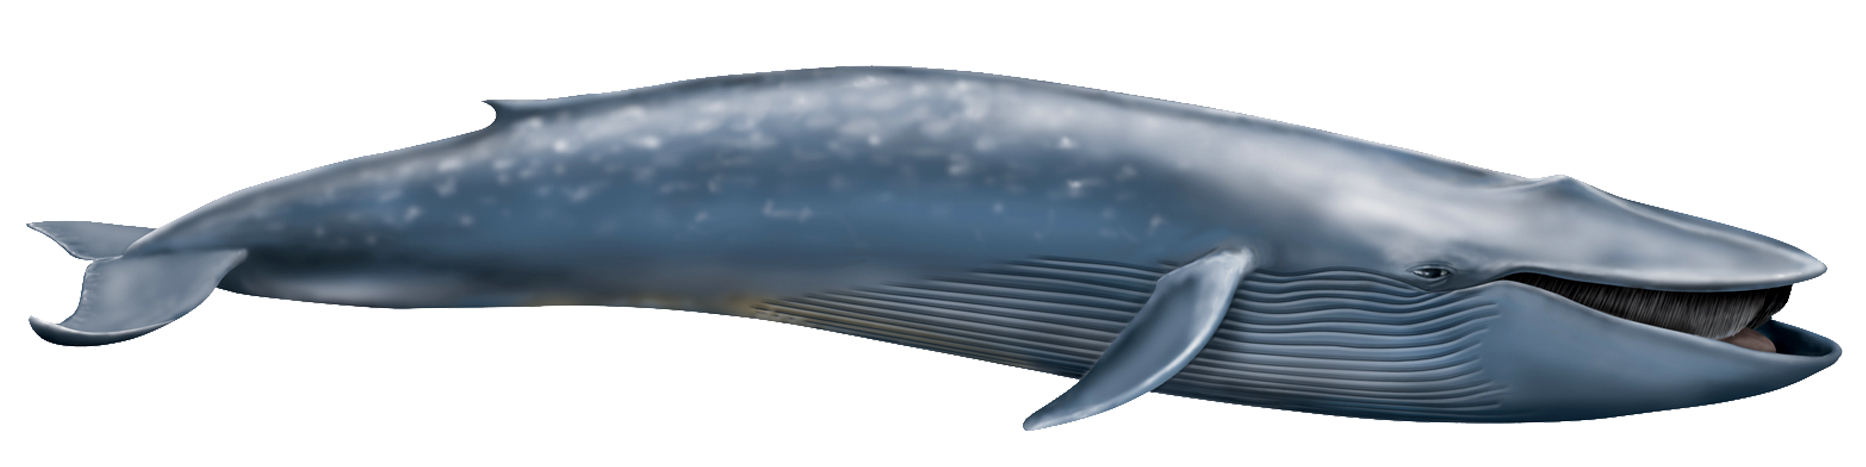 Blue Whale PNG Transparent